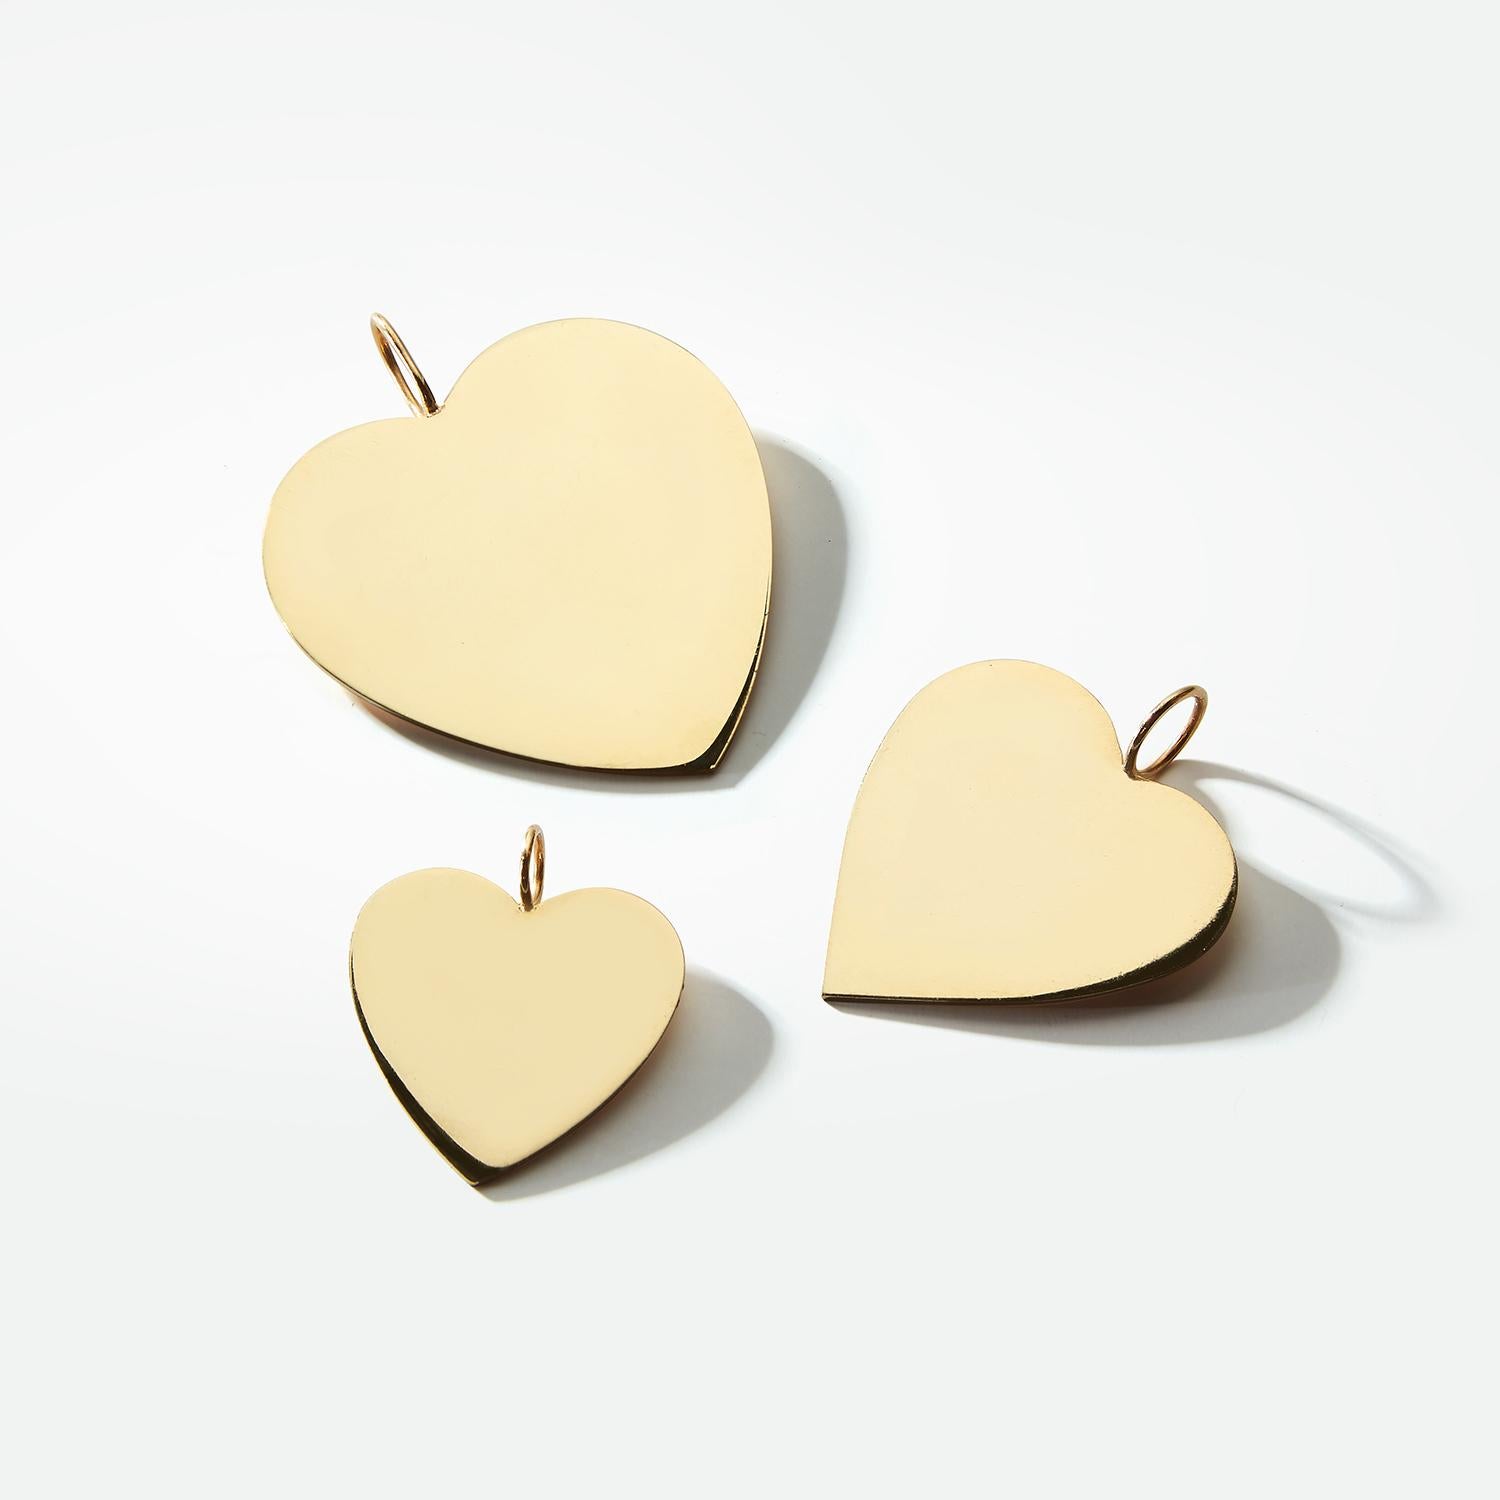 Les charmes de cœur en or massif de Garland Collection sont personnalisés et fabriqués à la main sur commande par nos maîtres bijoutiers d'établi à Los Angeles. Les cœurs en or massif de Garland peuvent être portés de plusieurs façons : sur un